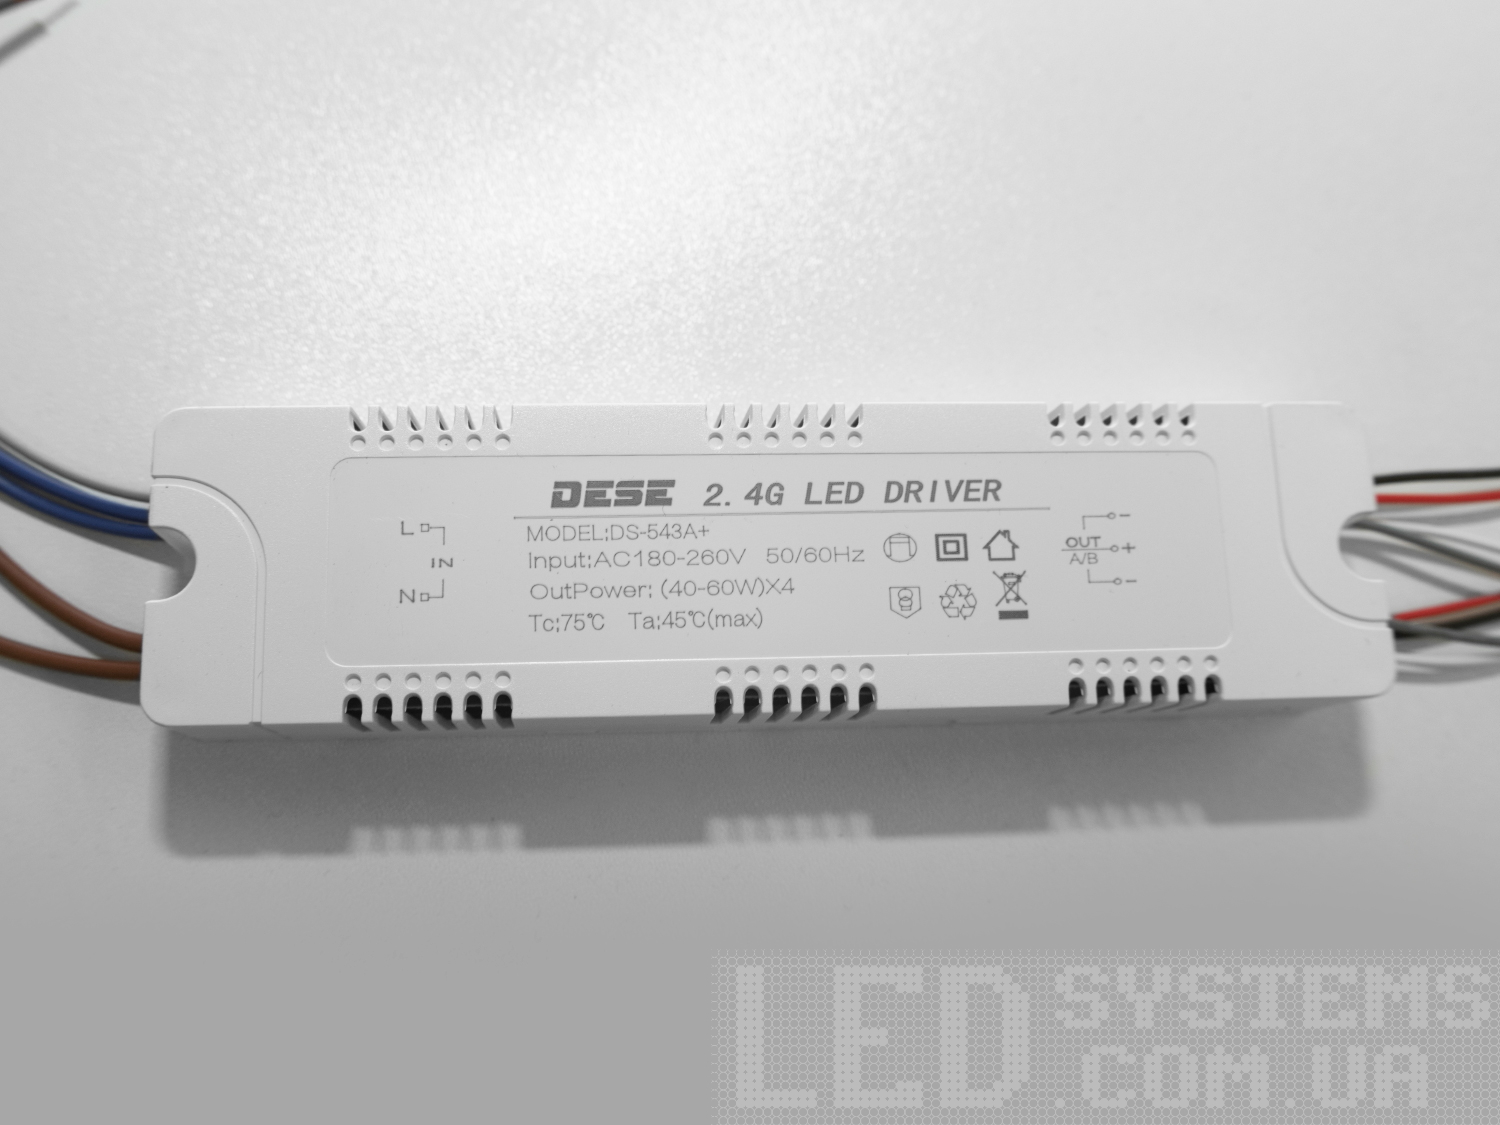 Універсальний комплект для переобладнання світлодіодних люстр.
Блок приймача пульта встановлюється на місце рідного блоку живлення світлодіодної люстри.
Цей комплект може бути використаний на люстрах з робочим струмом світлодіодних модулів від 210 до 300 мА.
Димер має 4 вихідні канали для підключення до стандартної світлодіодної люстри, схема підключення 